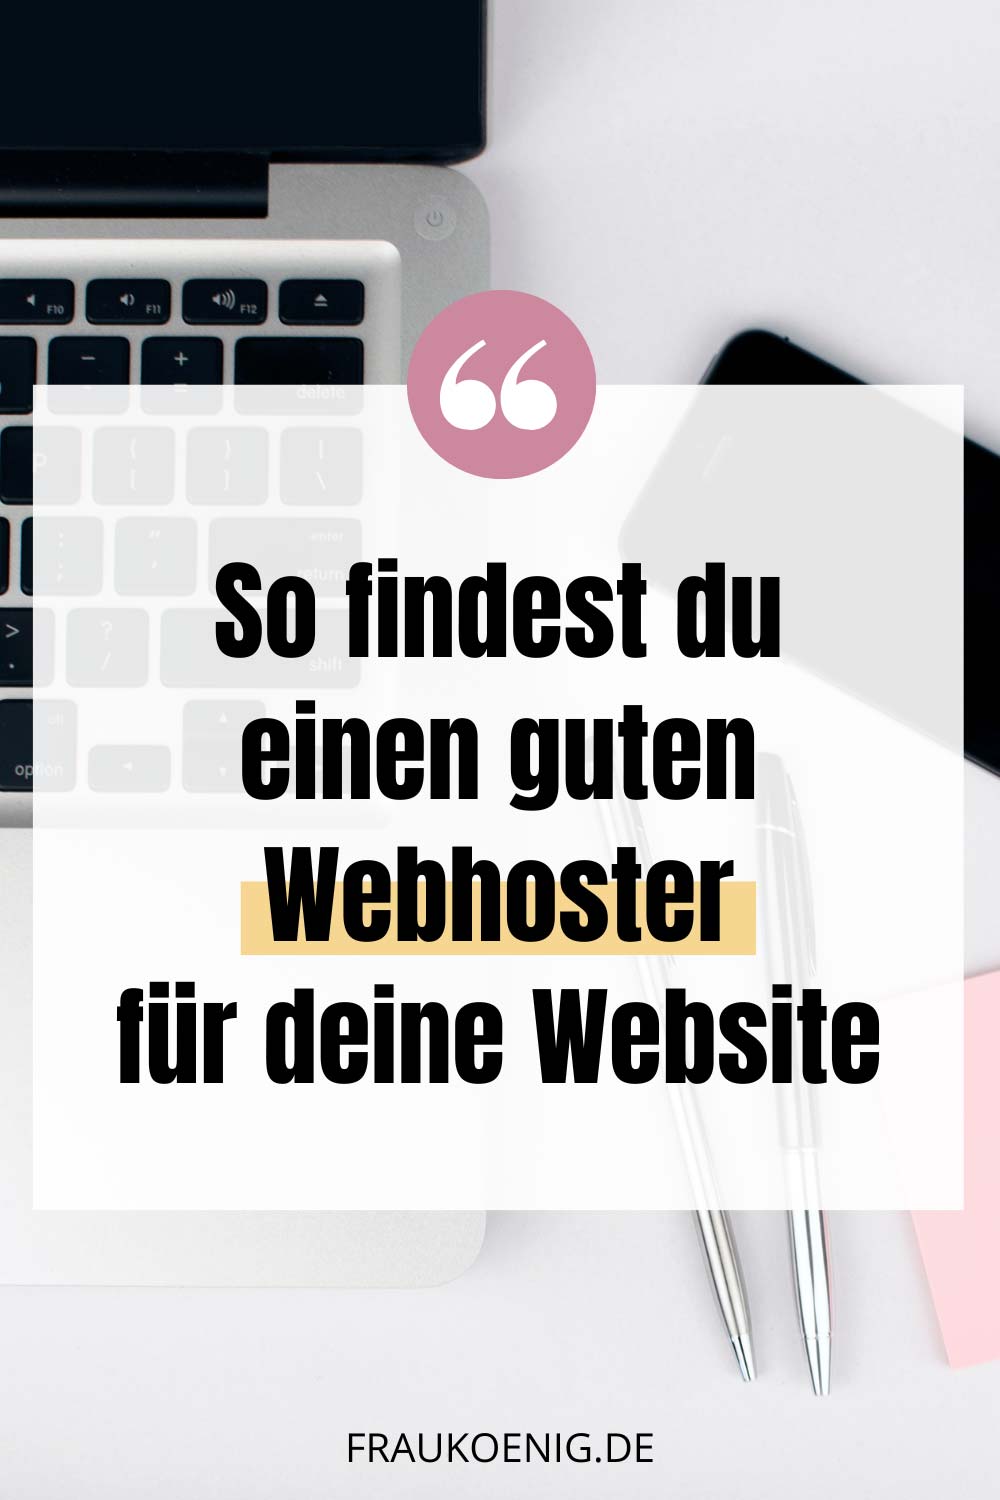 So findest du einen guten Webhoster für deine Website